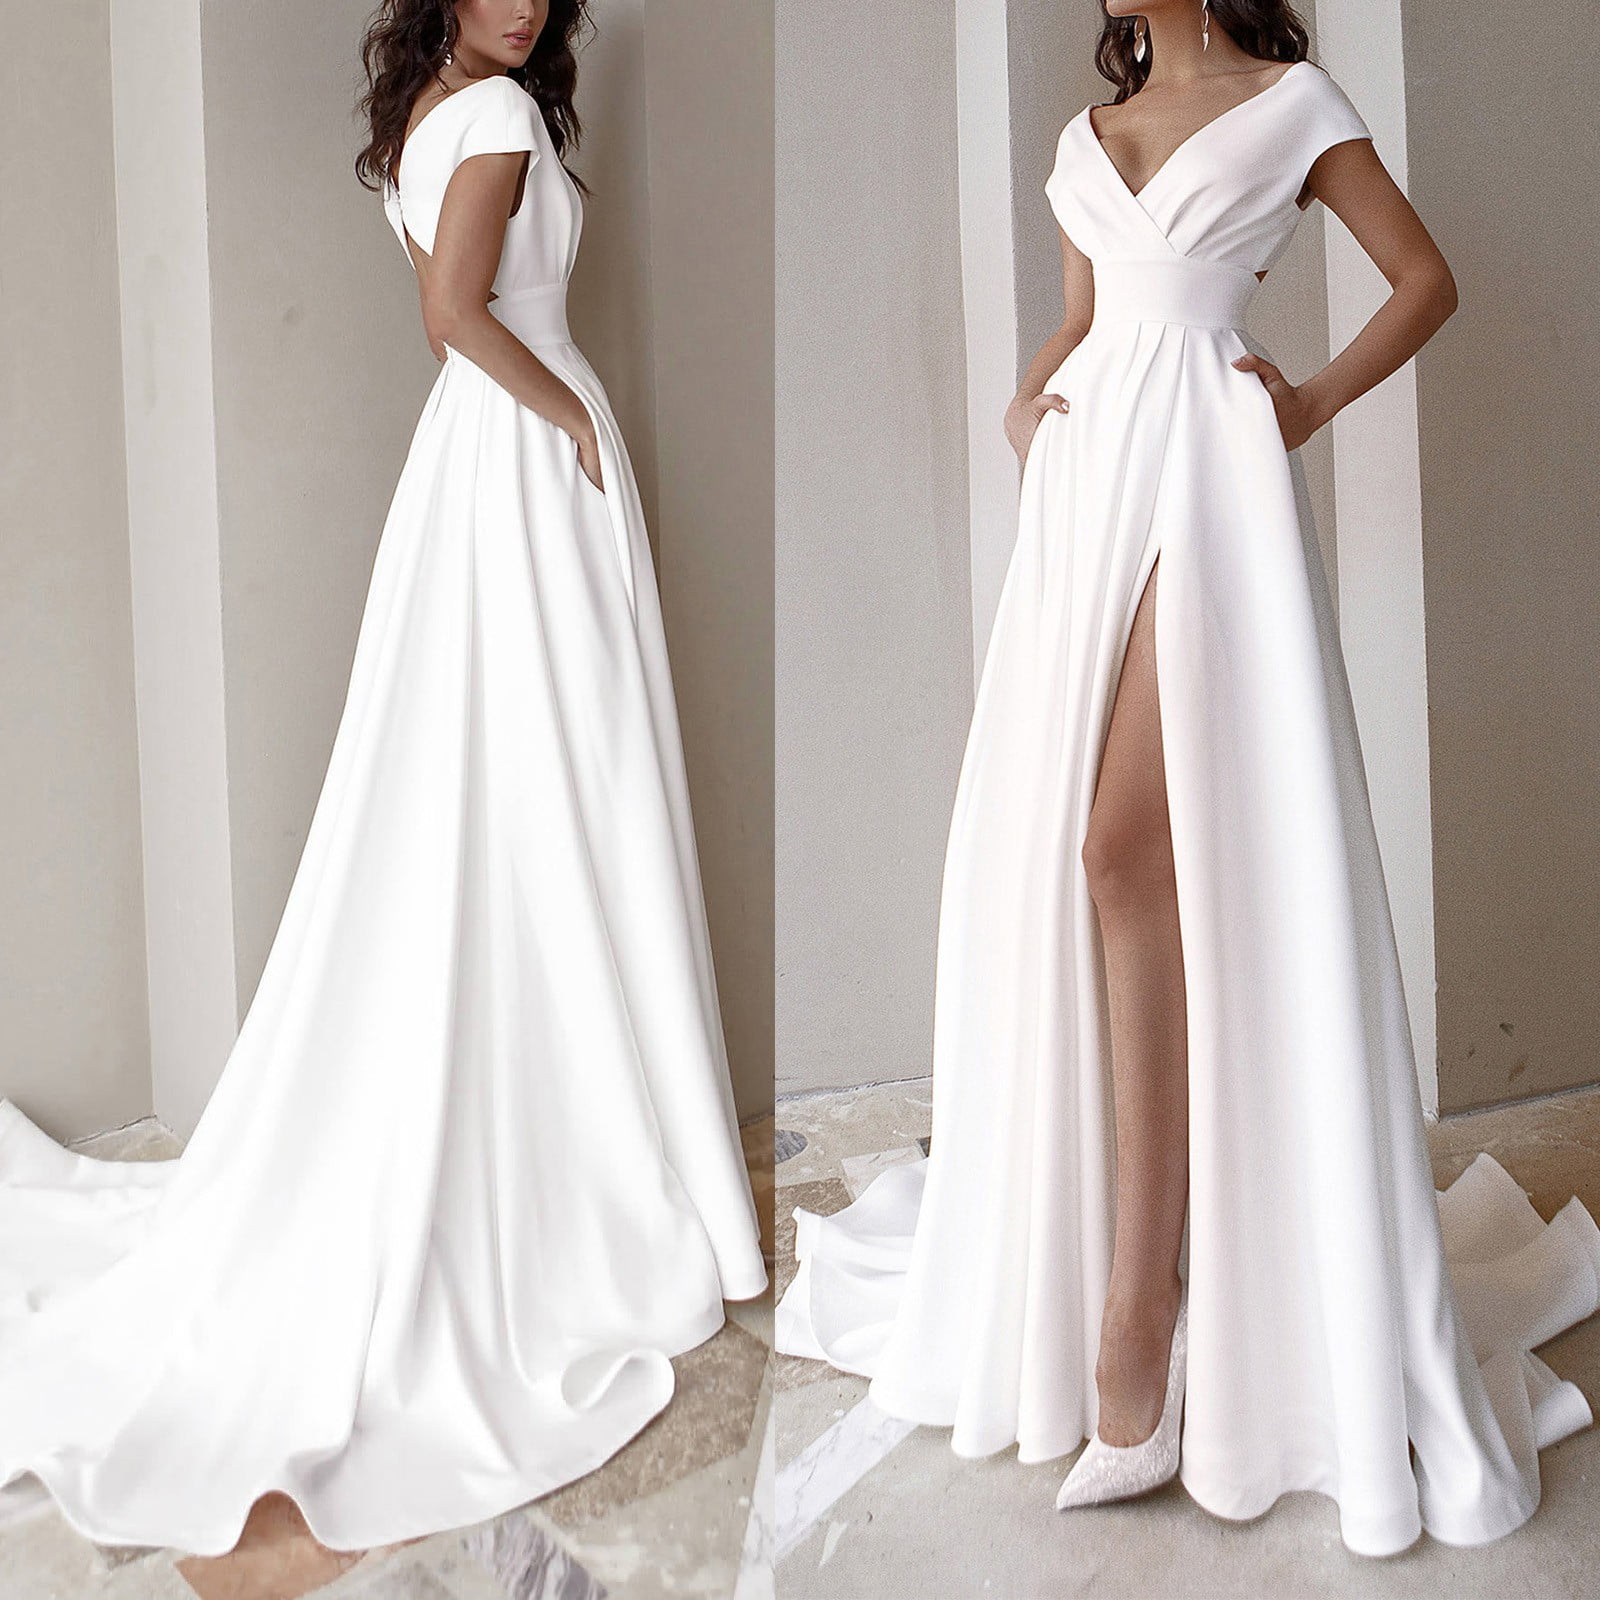 Women's Formal Dresses & Evening Gowns | Dillard's